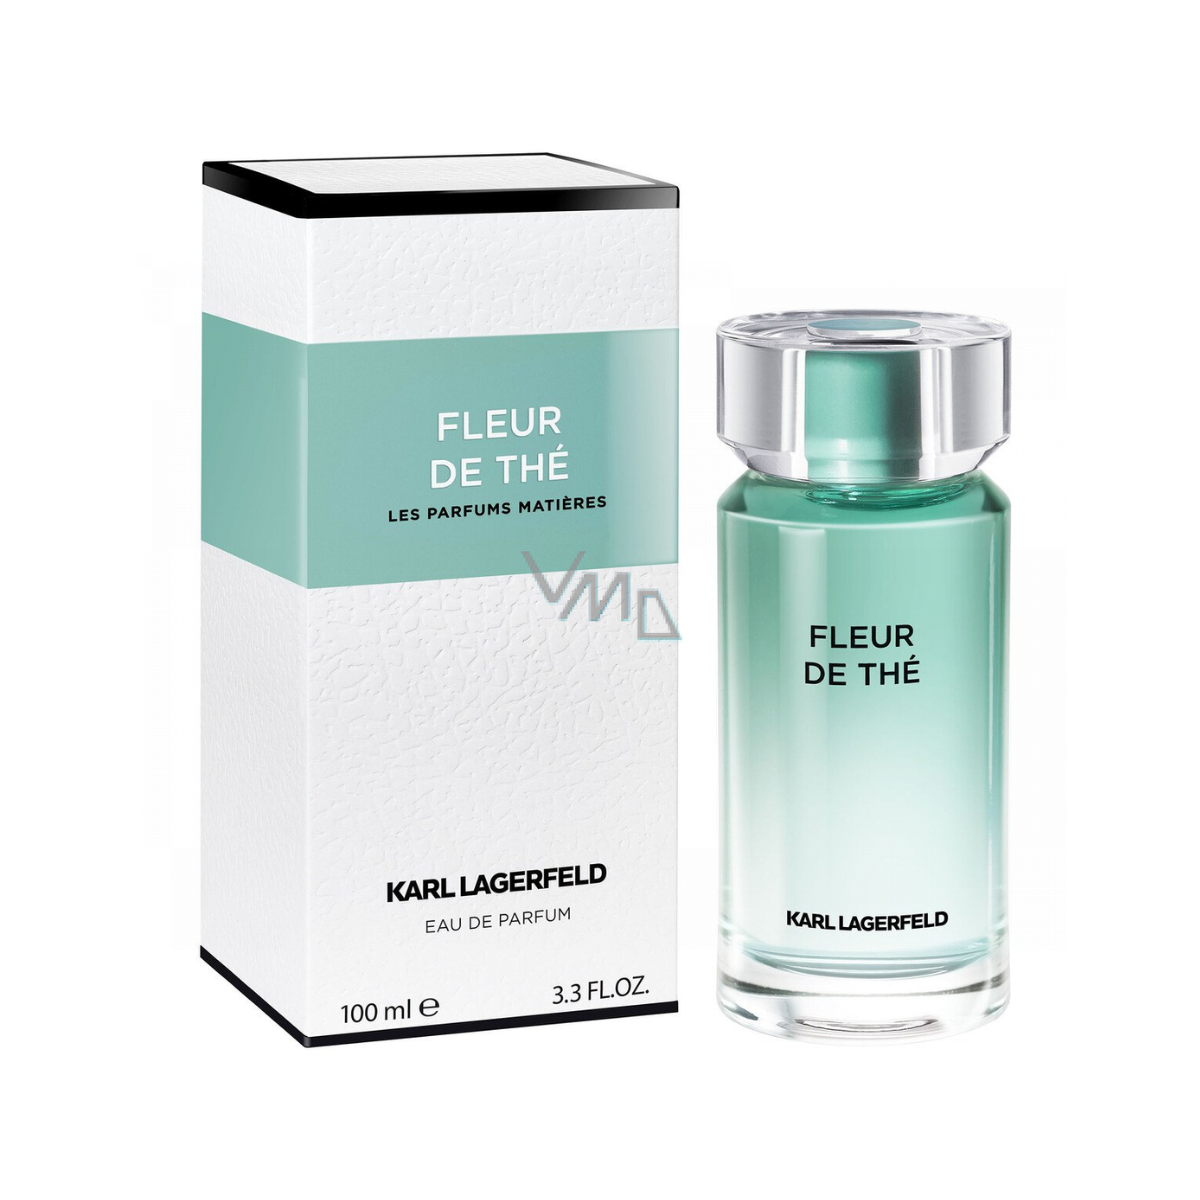 Karl Lagerfeld Fleur D The Eau De Parfum